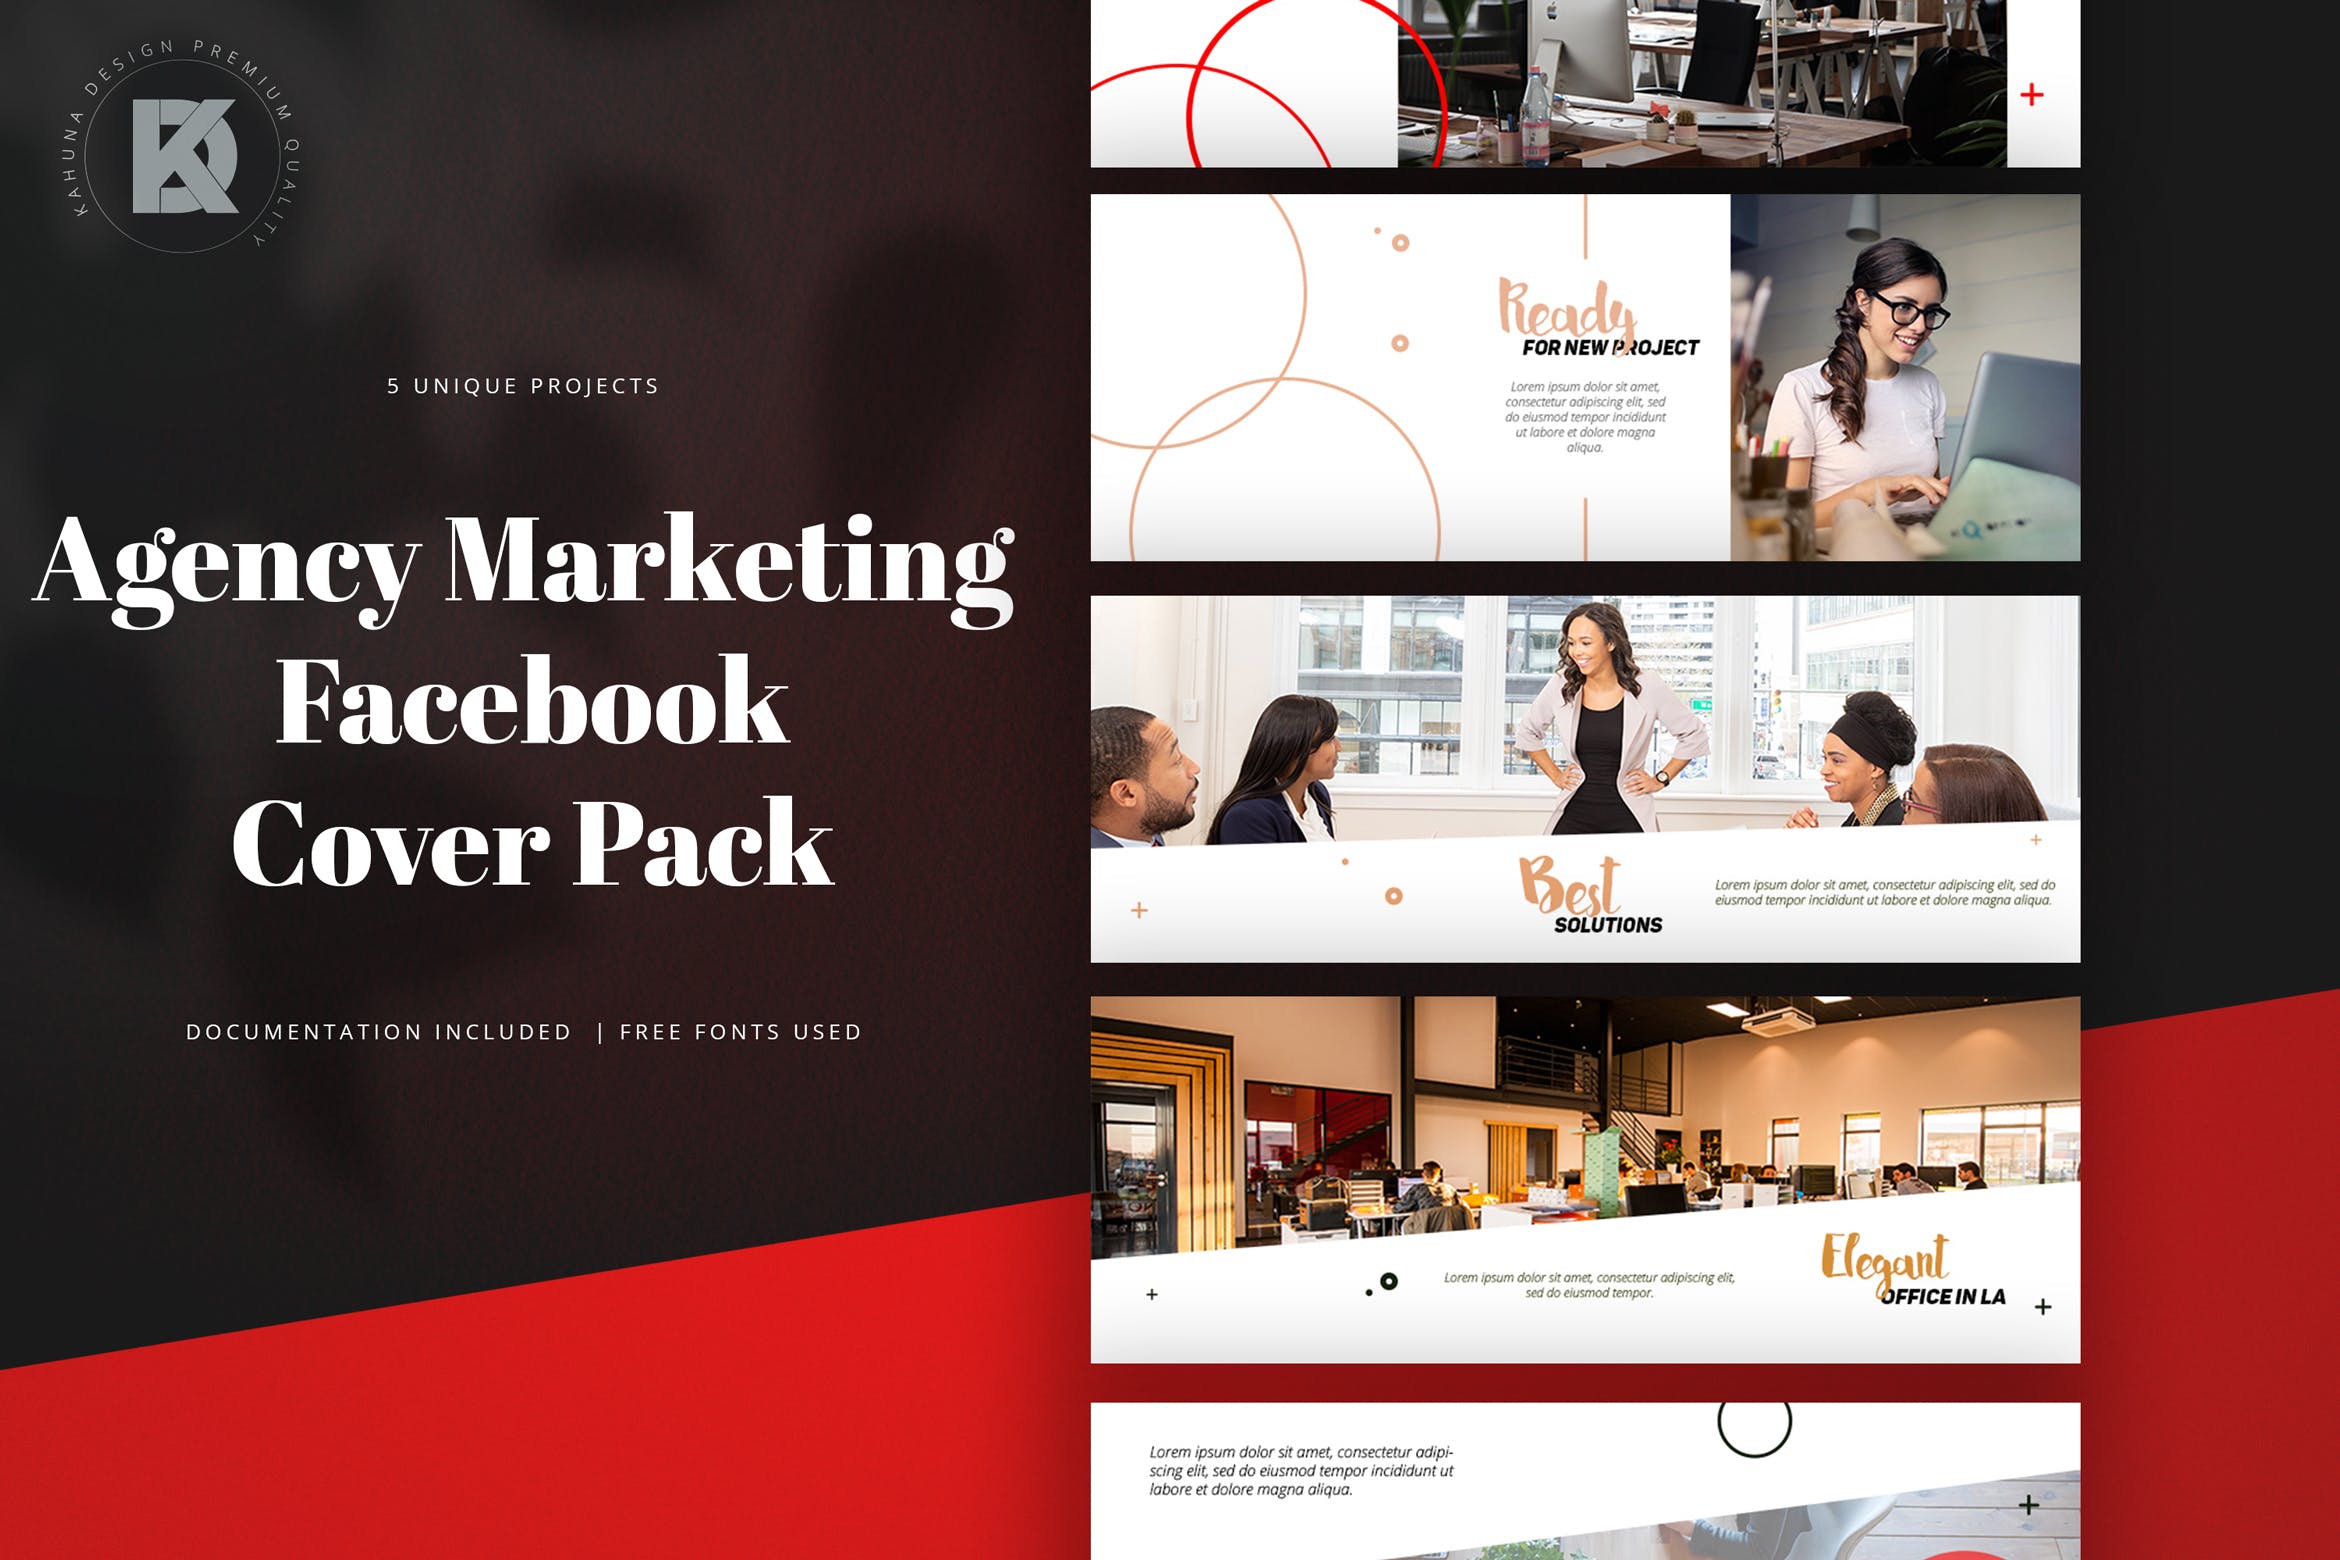 代理行销Facebook封面设计模板16设计网精选 Agency Marketing Facebook Cover Pack插图